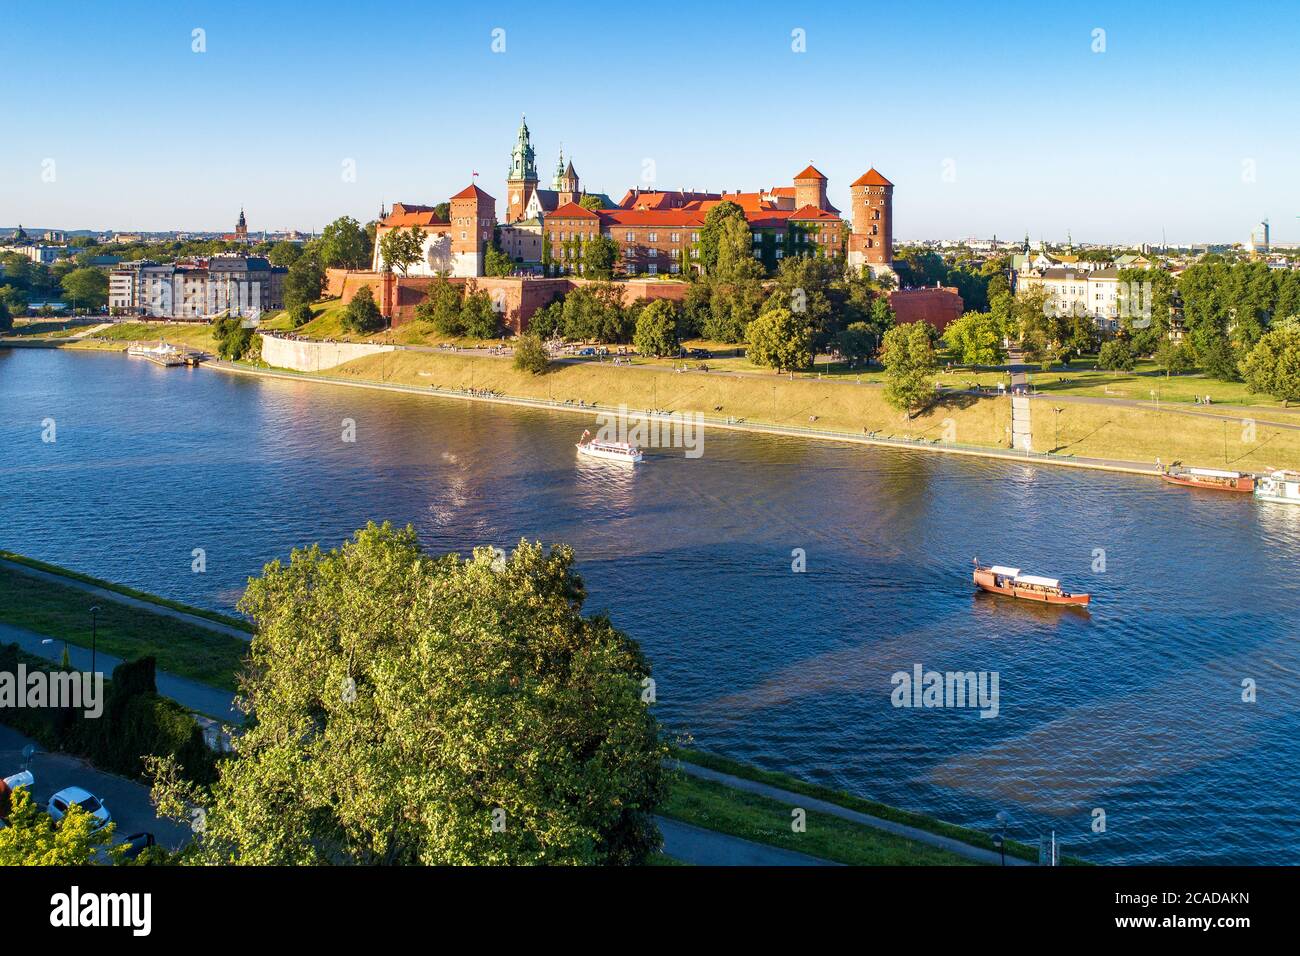 Königliche Wawel-Kathedrale und Schloss in Krakau, Polen. Luftaufnahme bei Sonnenuntergang. Weichsel, Touristenboote, Flussufer mit Parks, Bäume, Promenade Stockfoto